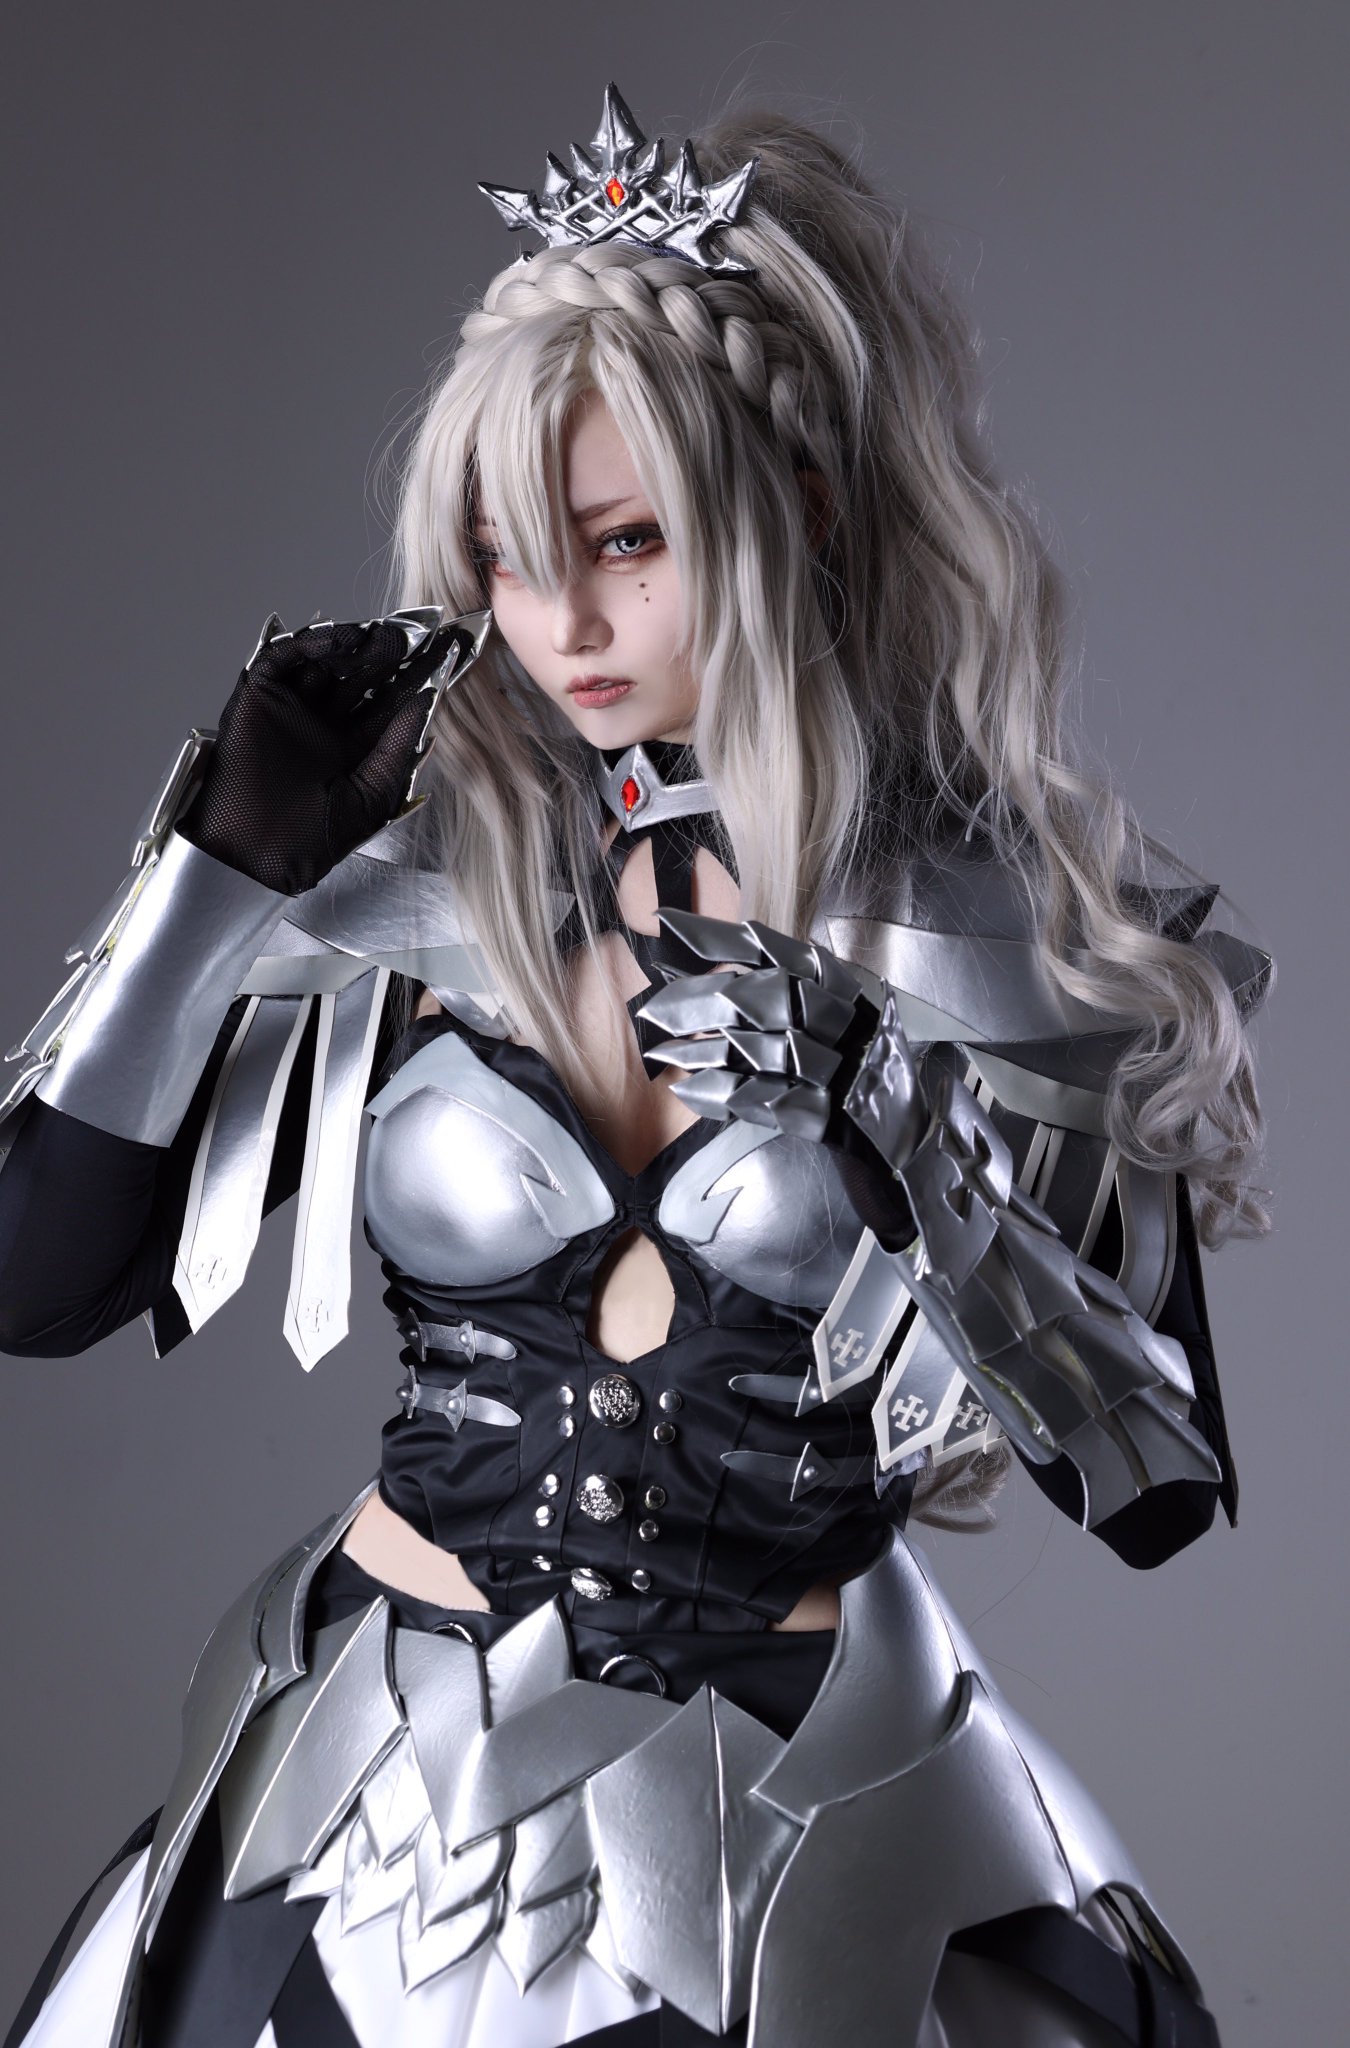 ピルス Alexander 🥪 on X: My radagon cosplay from momocon #MomoCon2022  #ELDENRING  / X